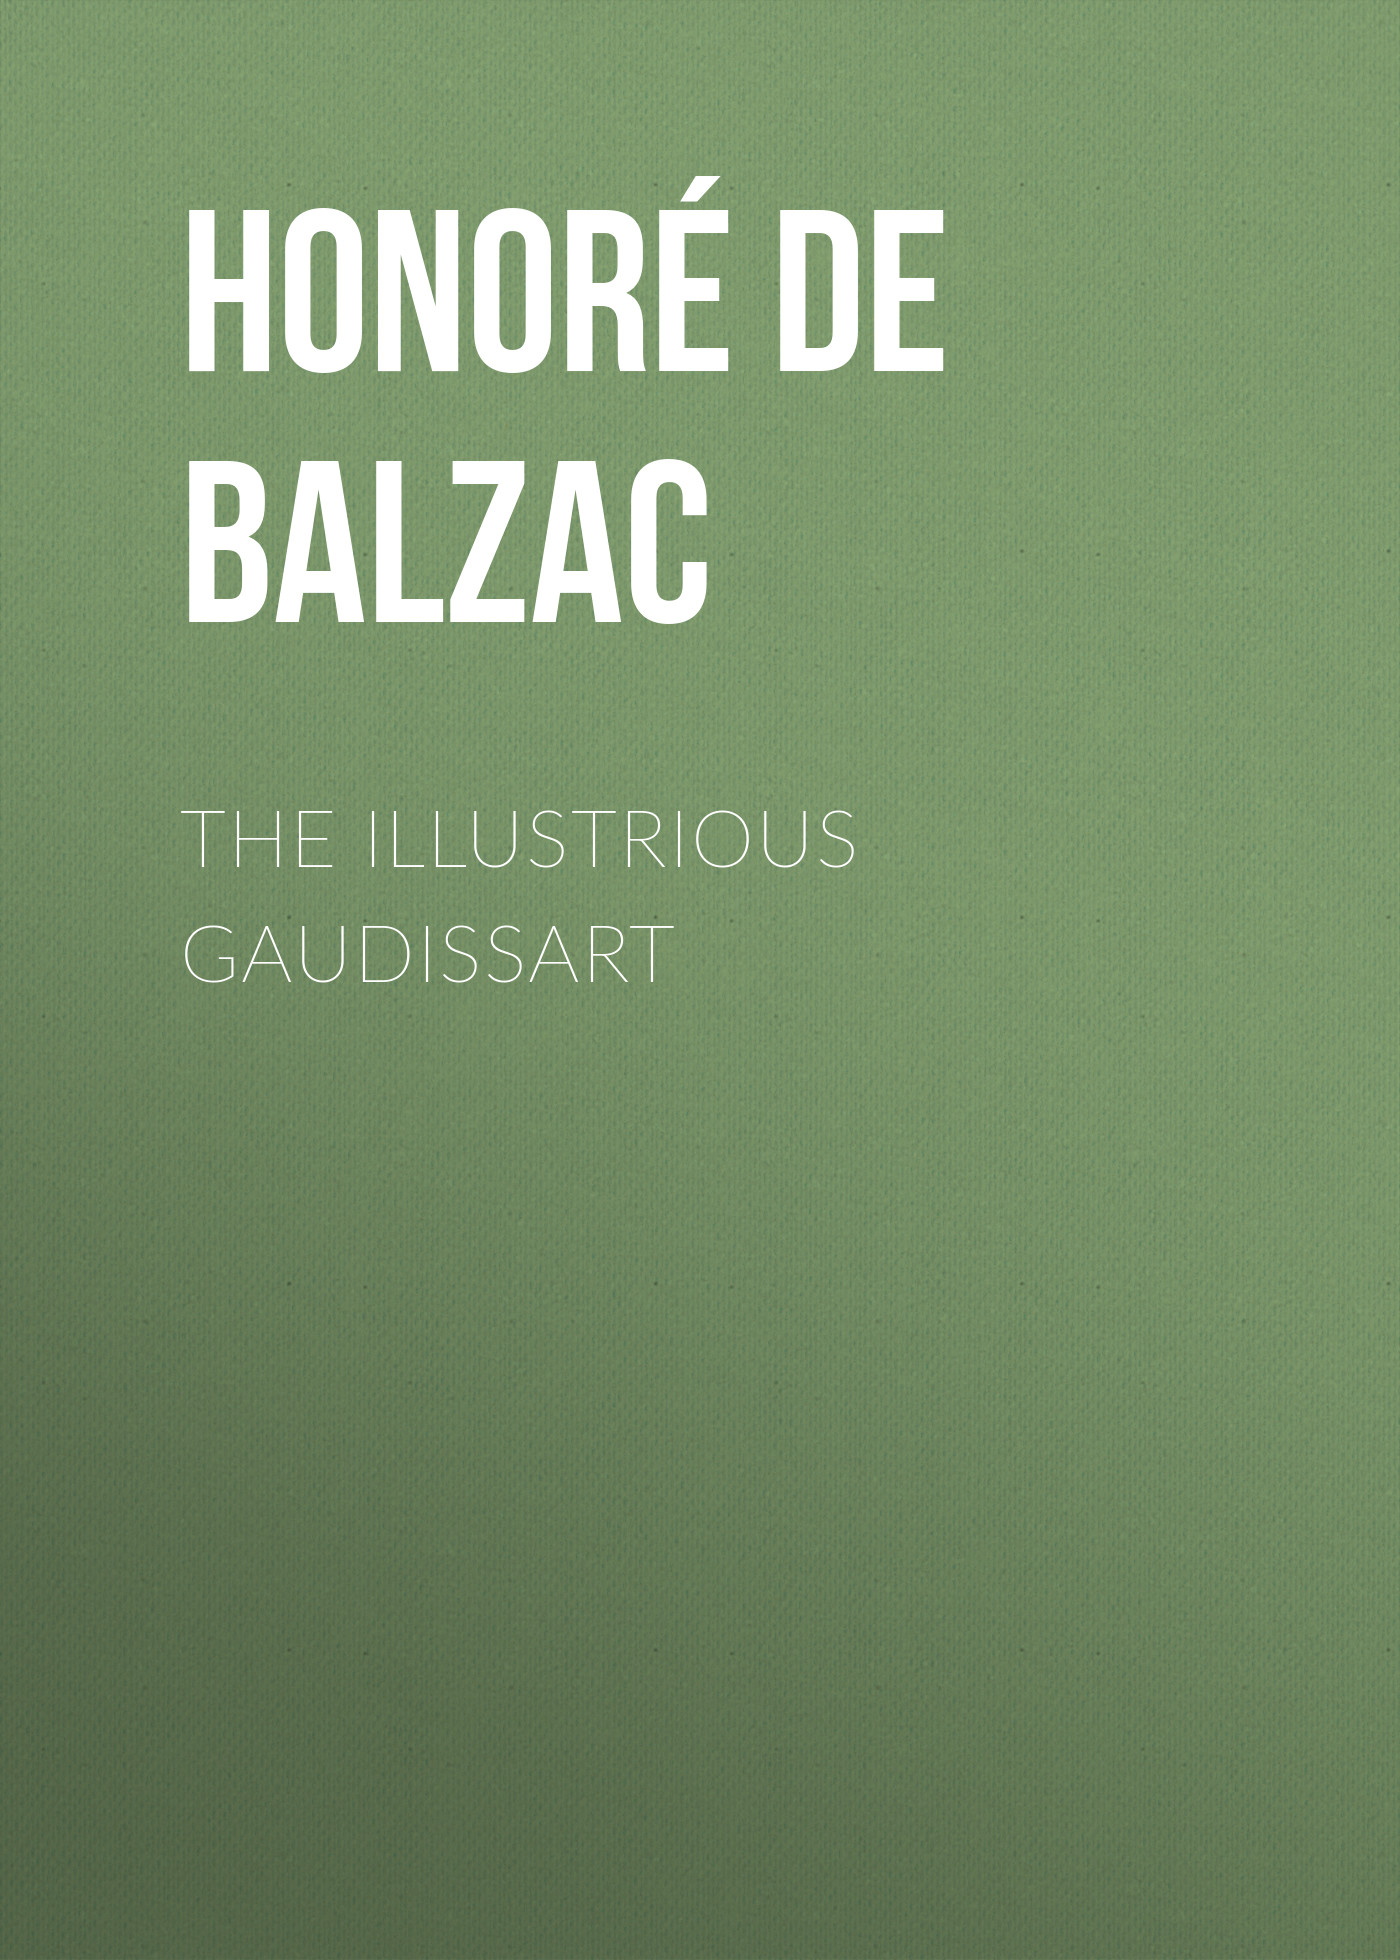 Книга The Illustrious Gaudissart из серии , созданная Honoré Balzac, может относится к жанру Литература 19 века, Зарубежная старинная литература, Зарубежная классика. Стоимость электронной книги The Illustrious Gaudissart с идентификатором 25021251 составляет 0 руб.